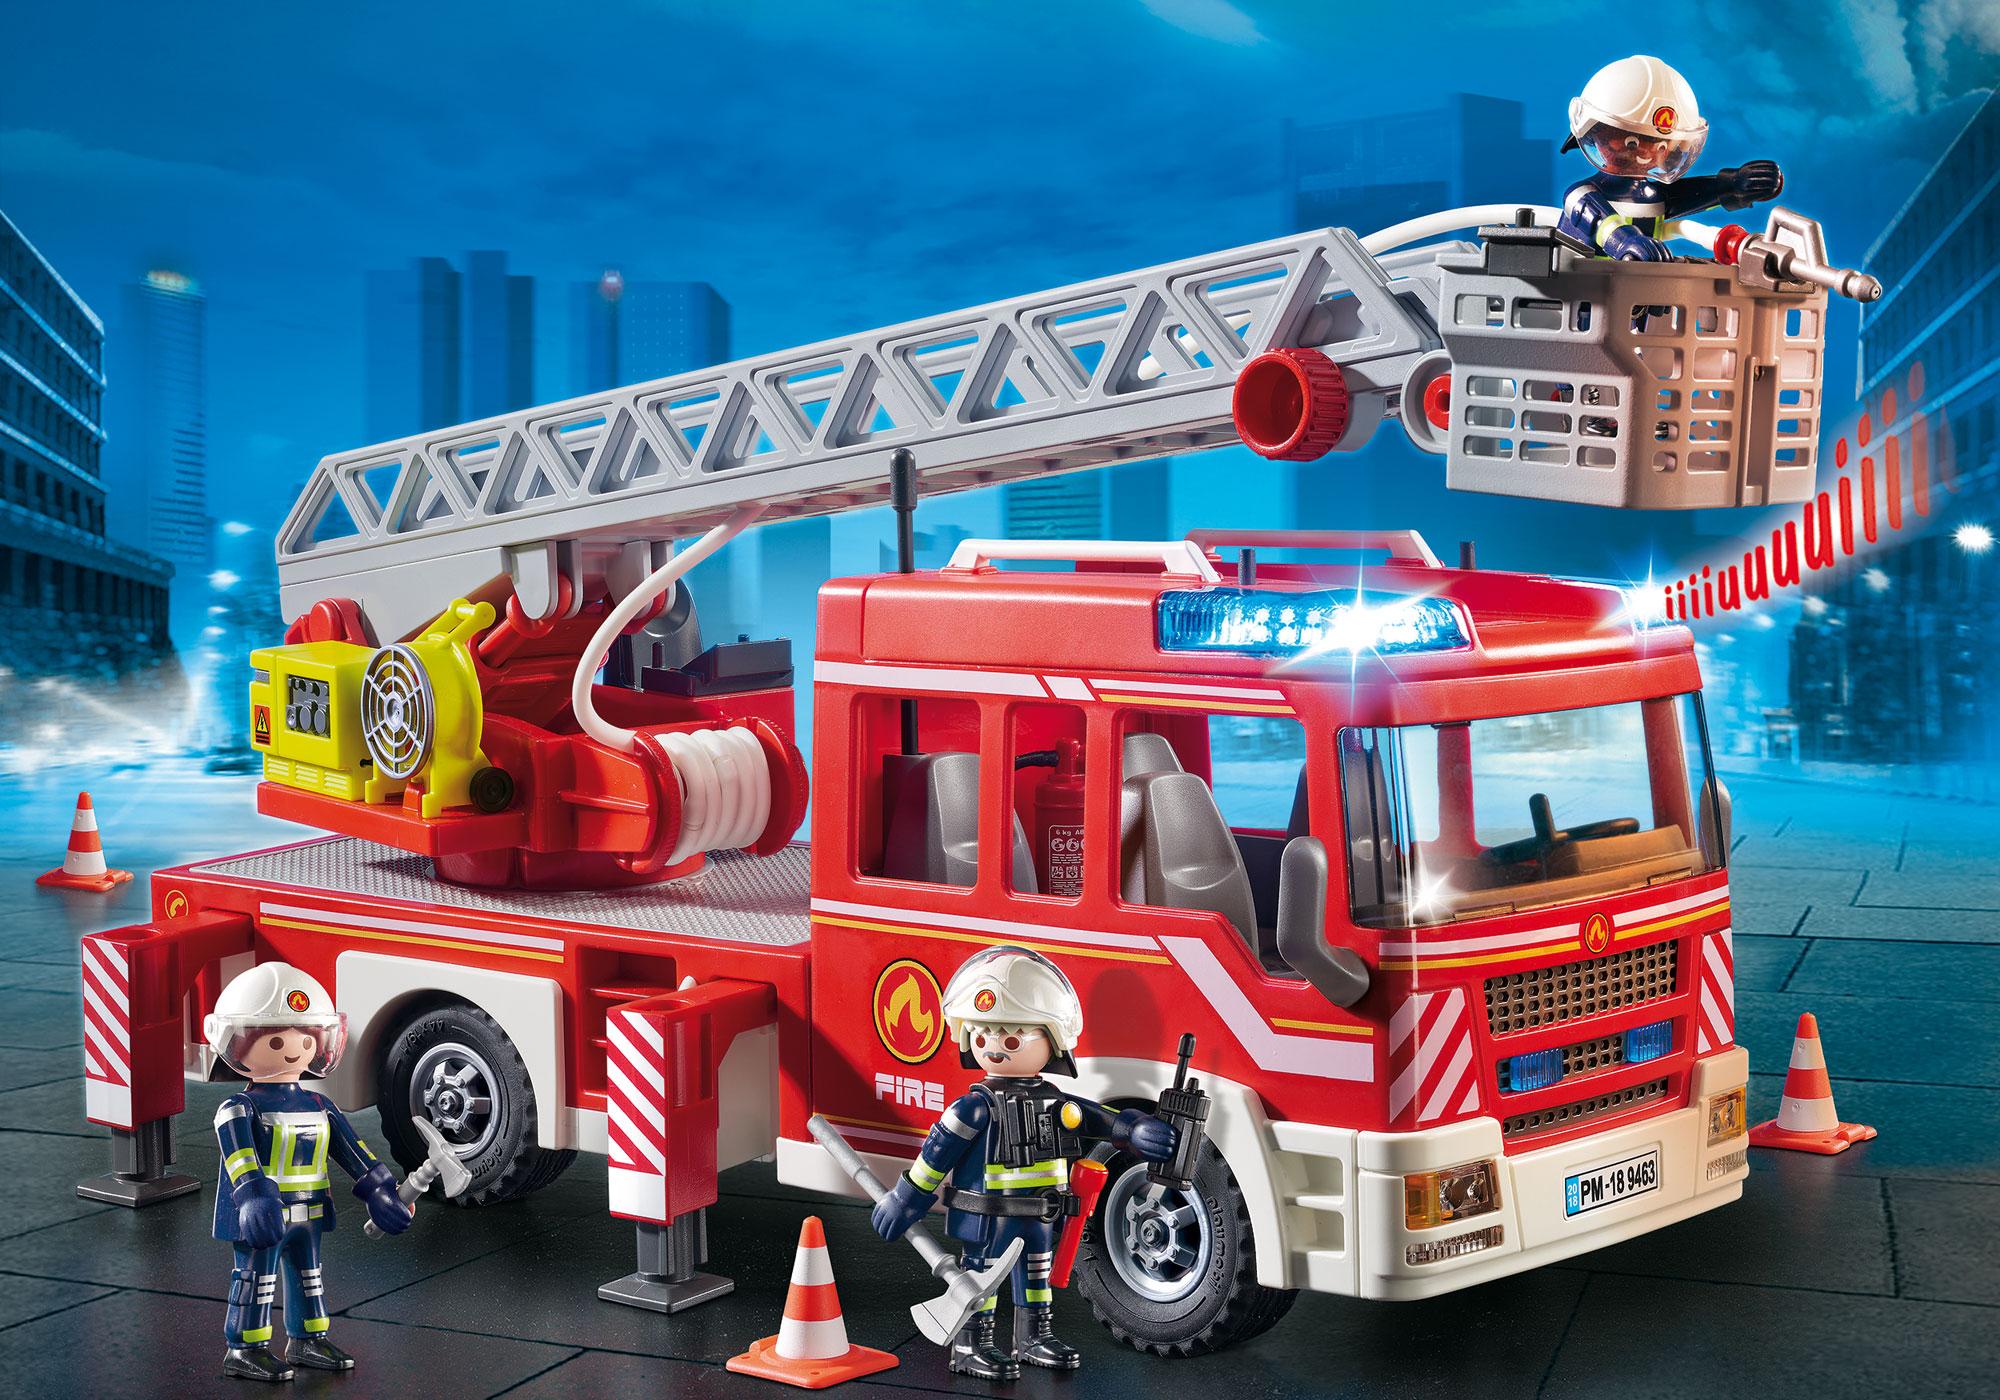 camion pompier 5362